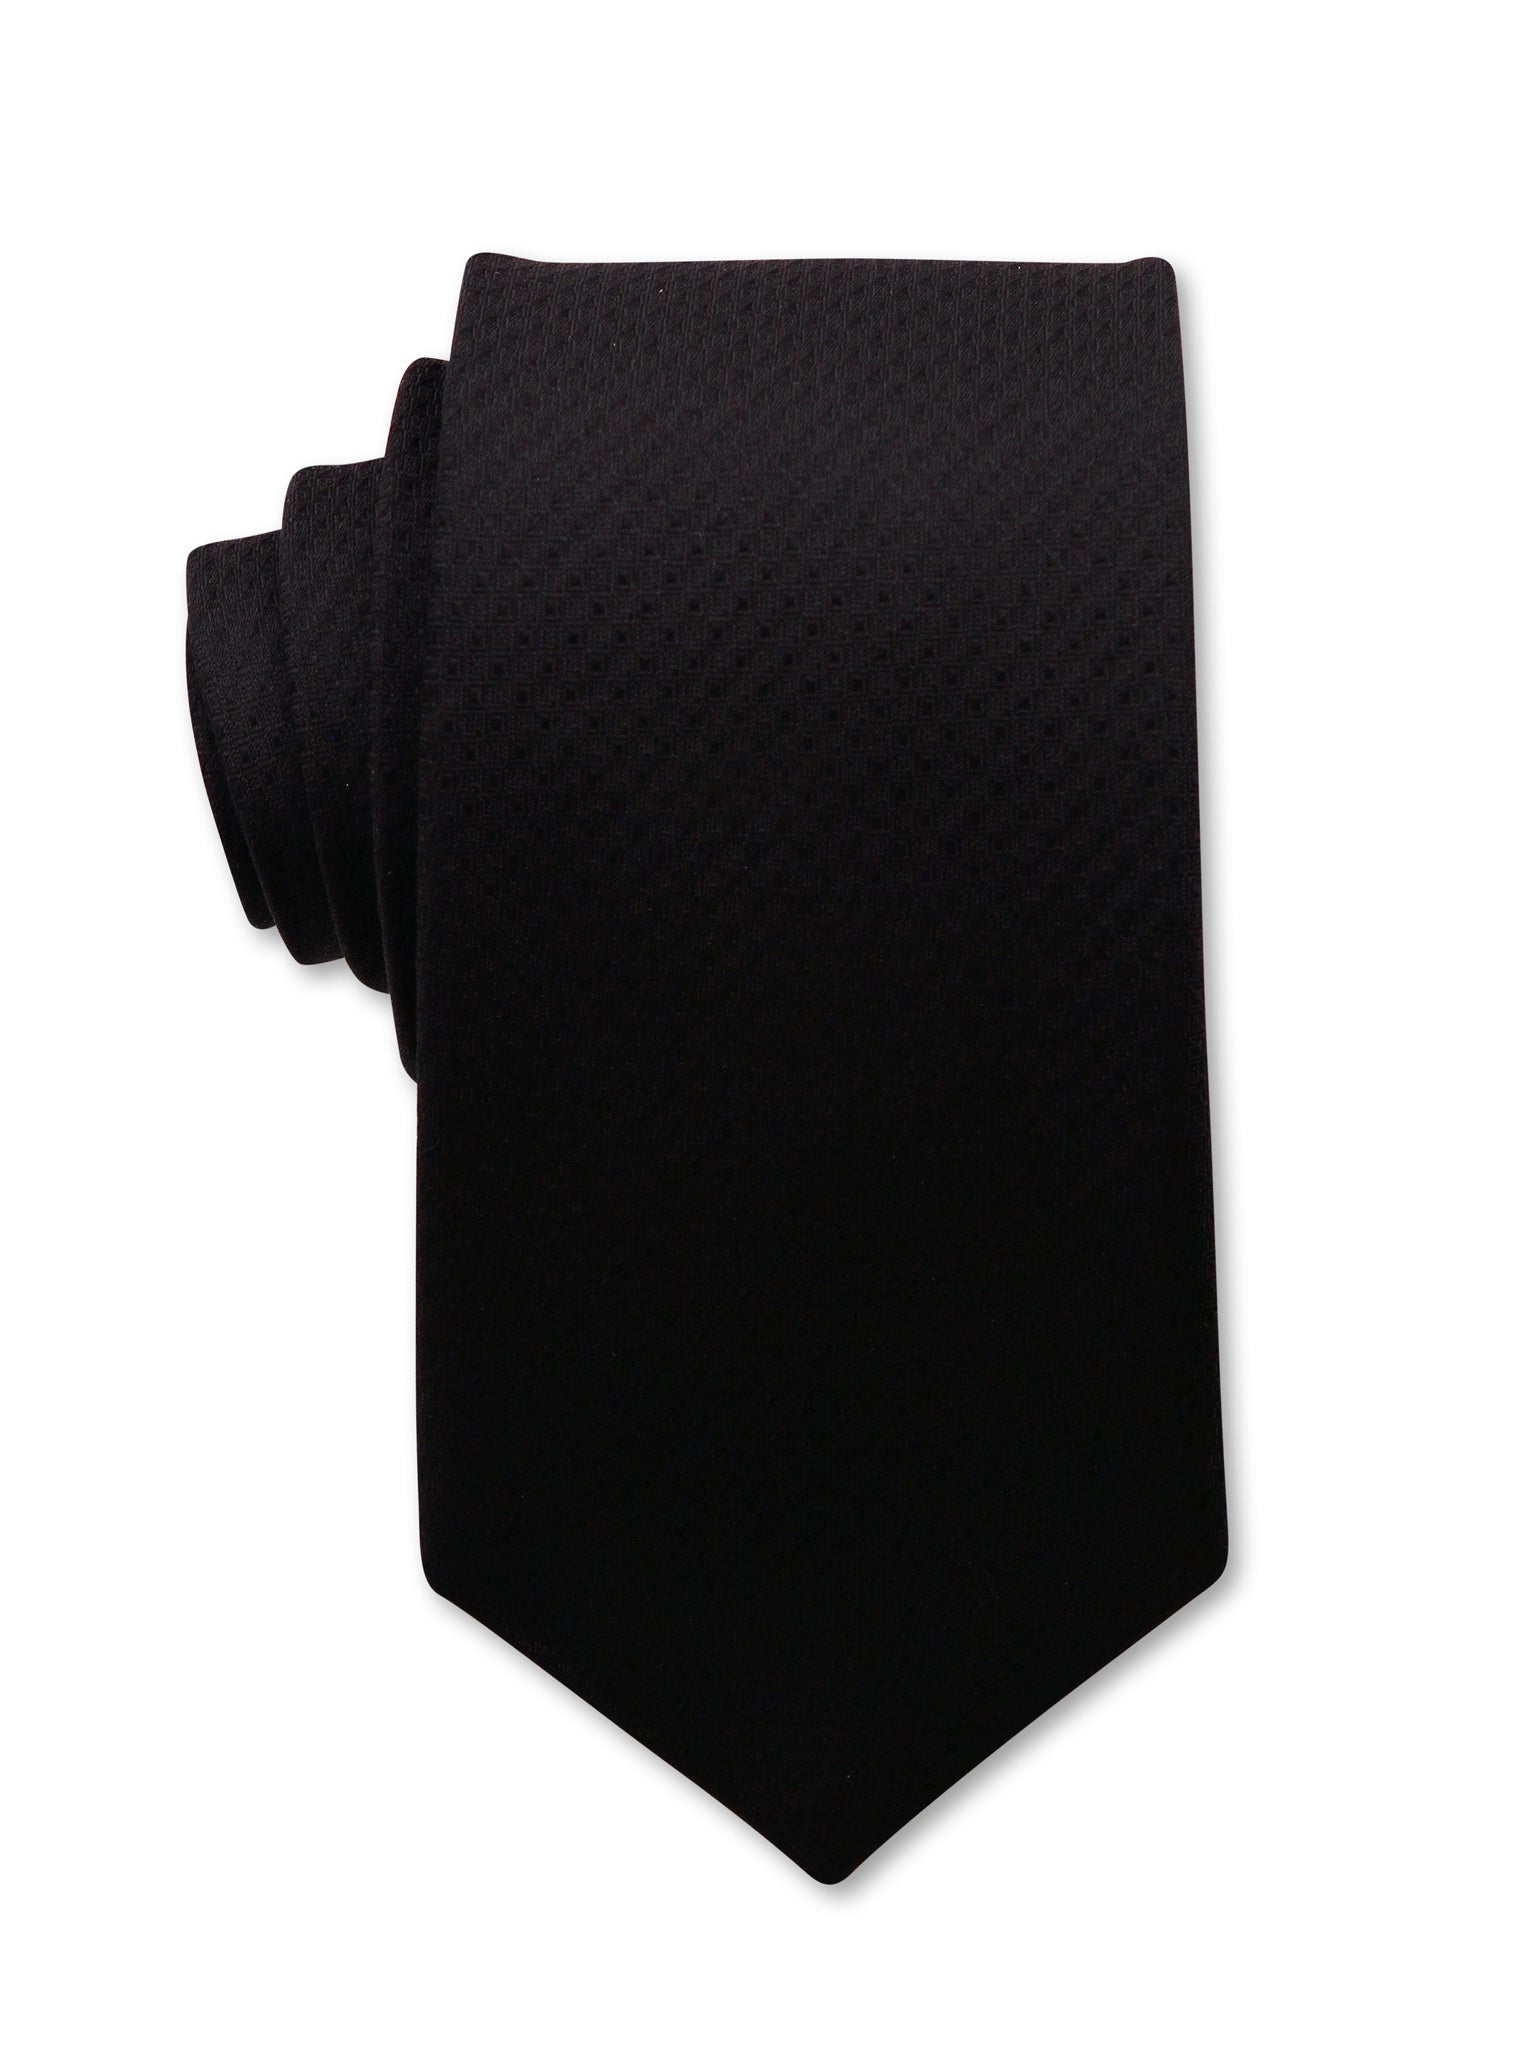 Black Textured 7cm Dean Luxury Silk Tie Made in Australia